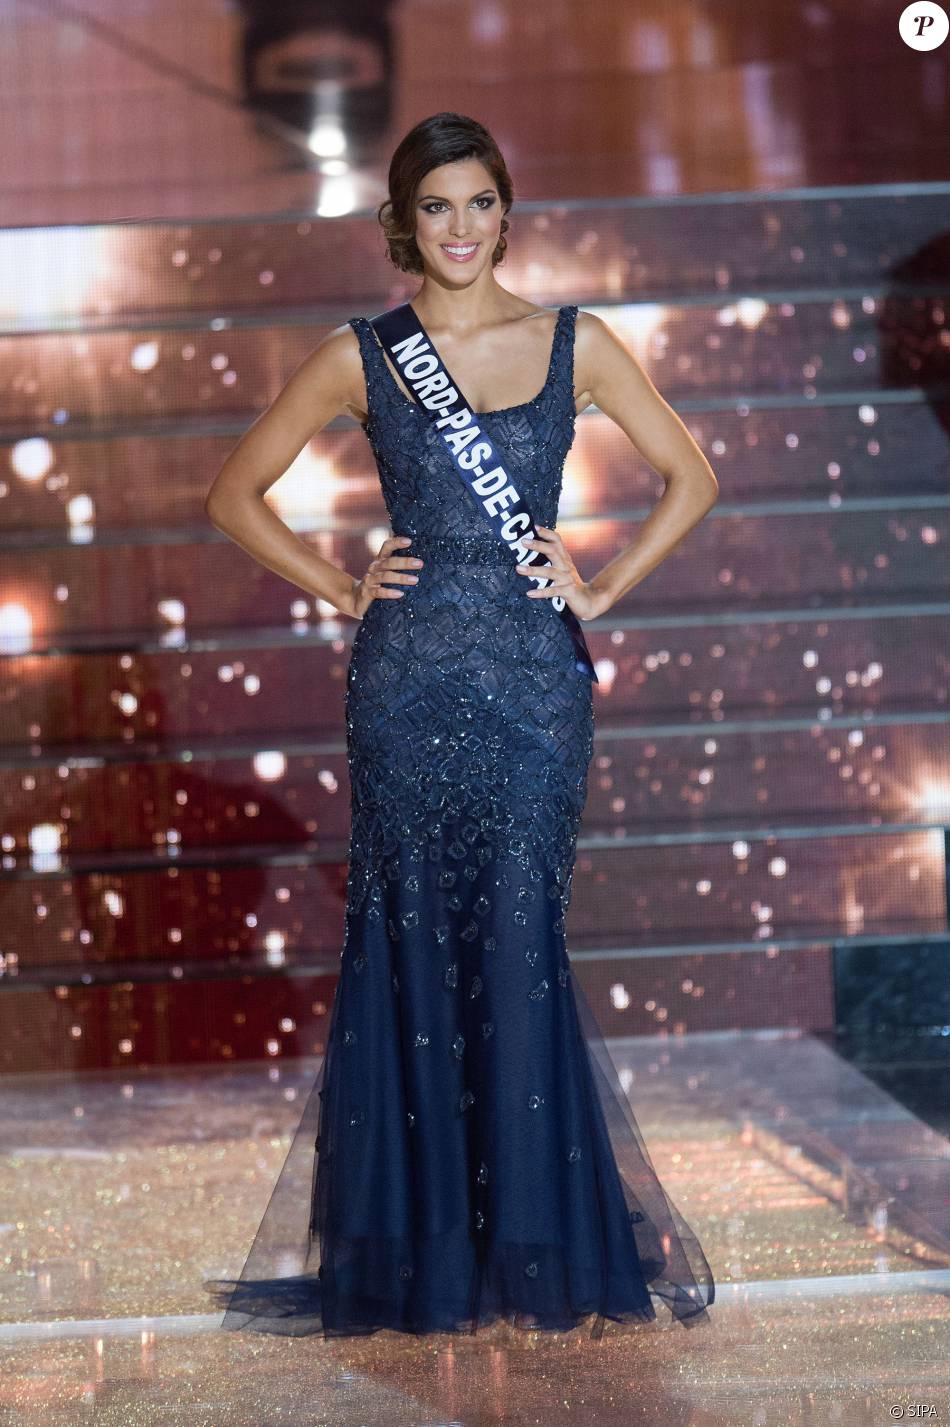 Iris Mittenaere en robe de soirée, lors de l'élection de Miss France 2016 au Zénith de Lille, le samedi 19 décembre 2015.